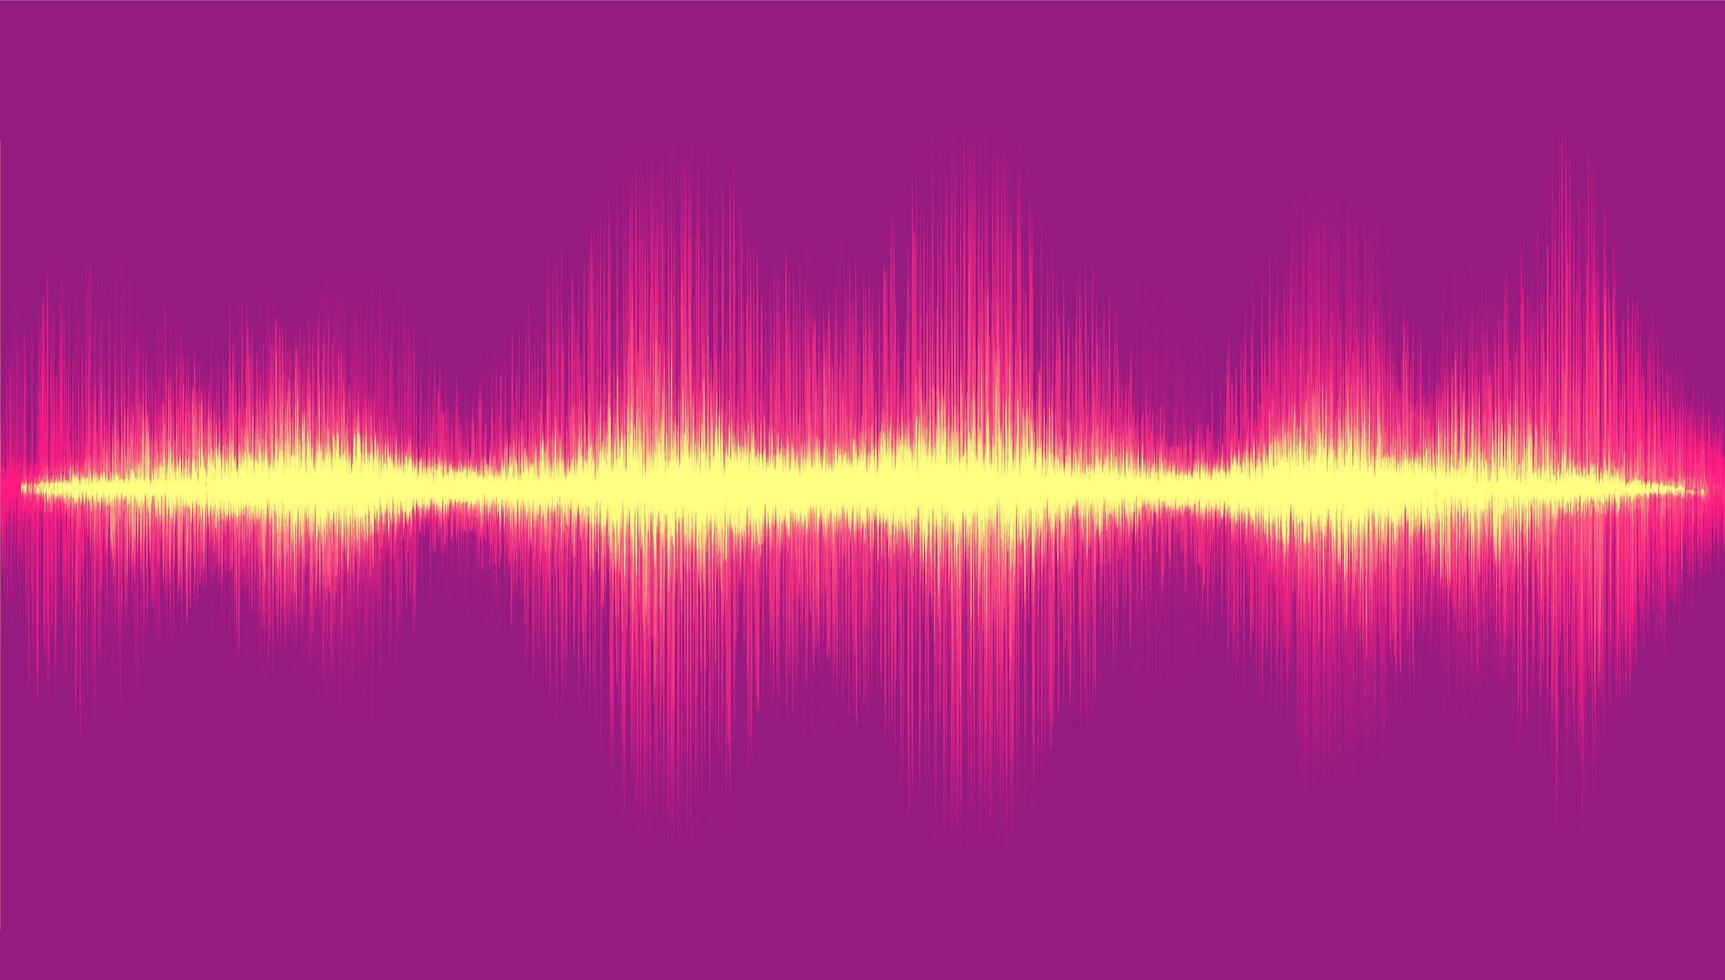 luz onda sonora digital em fundo violeta, conceito de onda de tecnologia, design para estúdio de música e ciência, ilustração vetorial. vetor